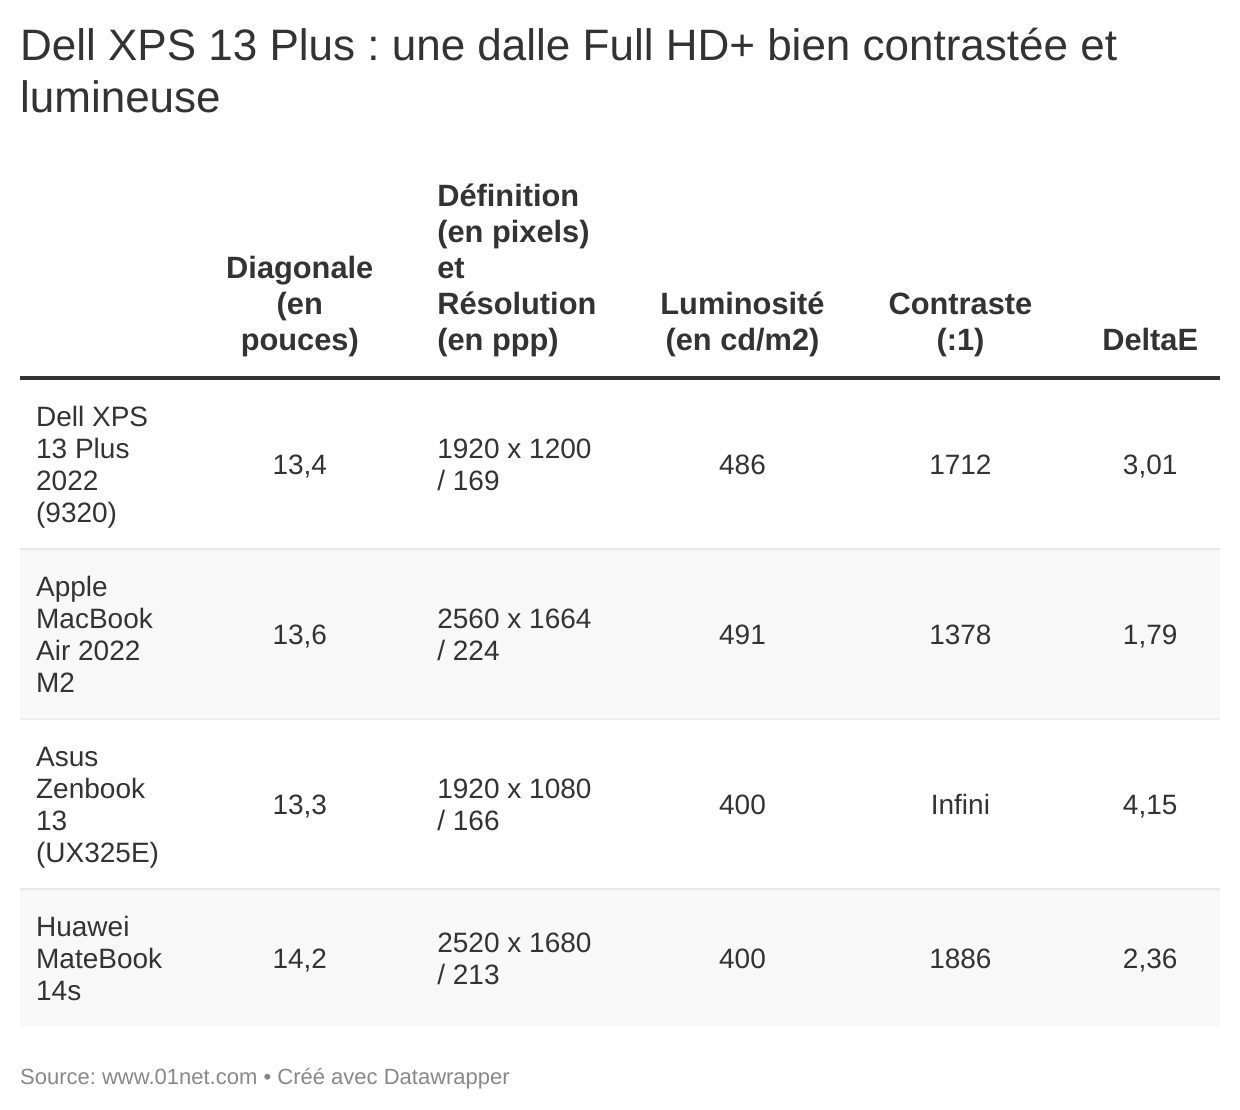 Agréable, lumineuse et très contrastée, la dalle Full HD+ du XPS 13 Plus manque un peu de résolution.